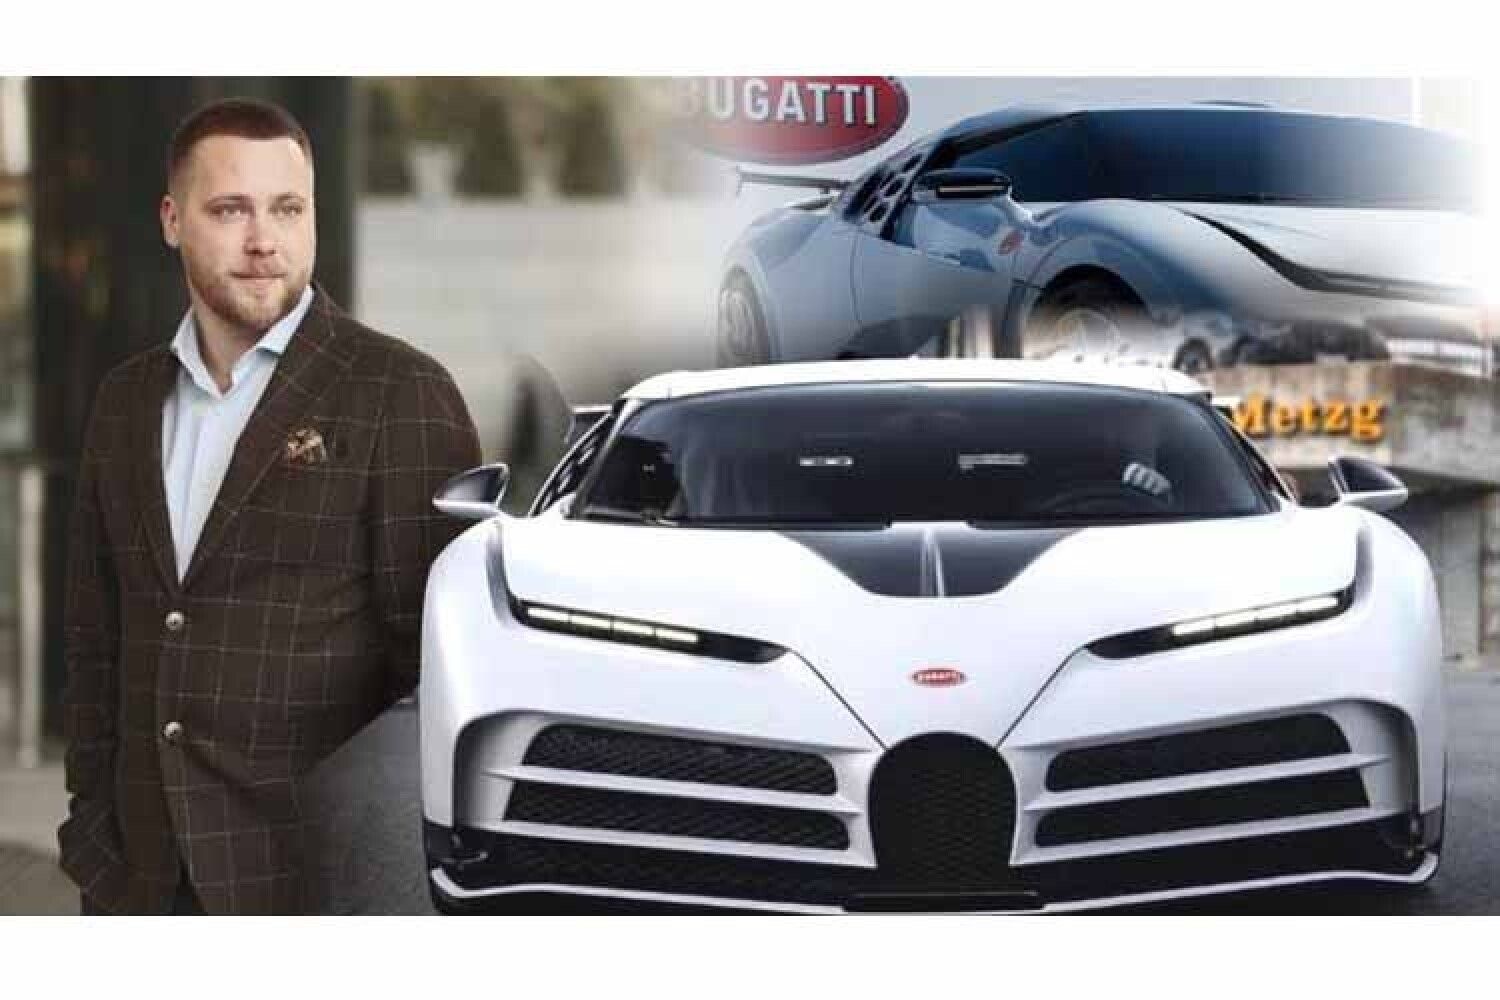 Михайло, молодий житель України, здивував світ, коли випущений тільки декілька років тому автомобіль Bugatti Centodieci став його новою автівкою.